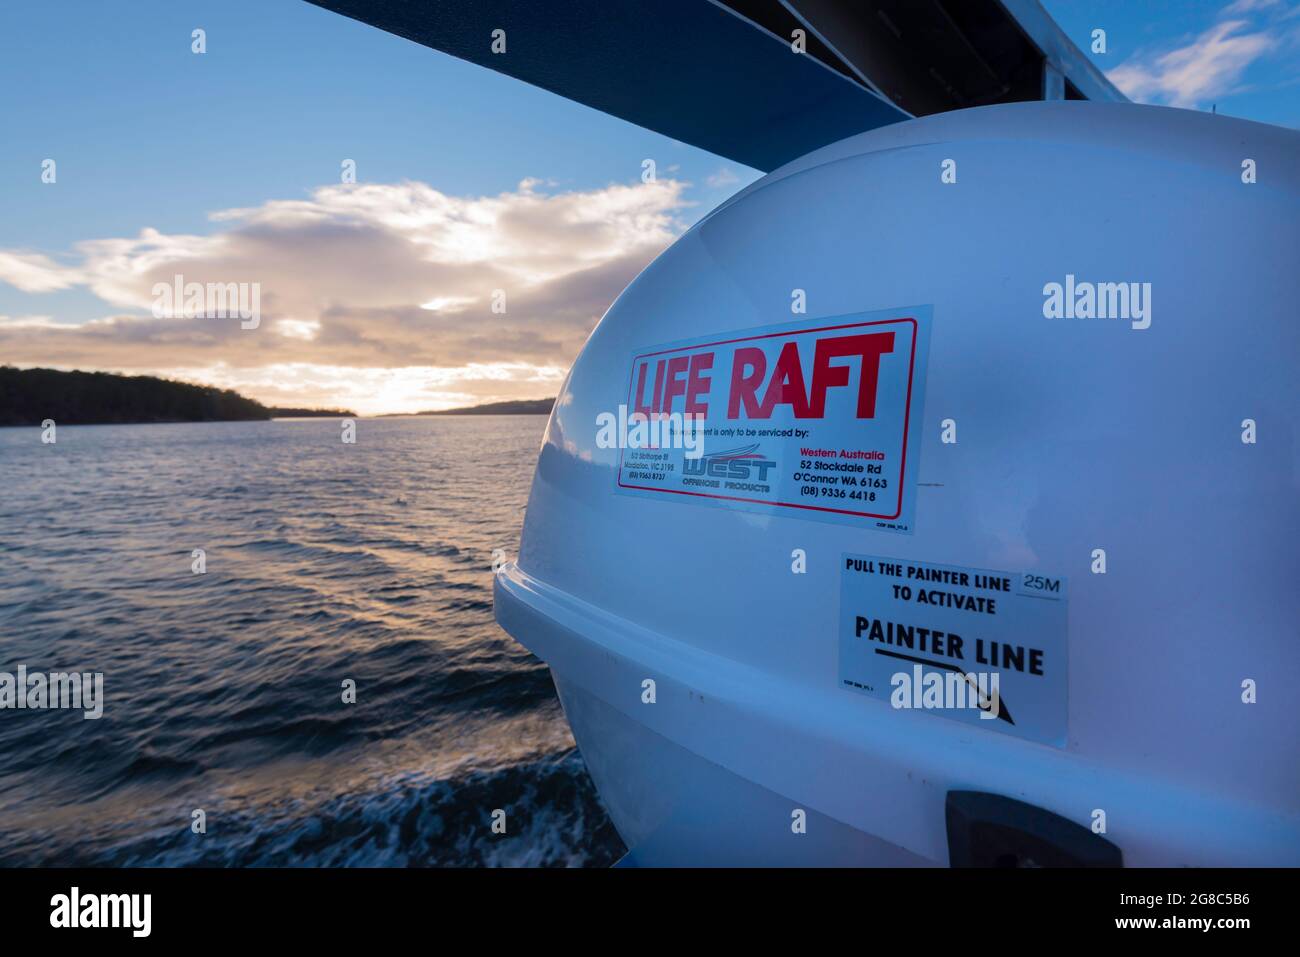 Un radeau de sauvetage moderne sur le nouveau ferry Sealink qui relie Kettering et Bruny Island à travers le d'Entrecasteaux Chanel en Tasmanie, en Australie Banque D'Images